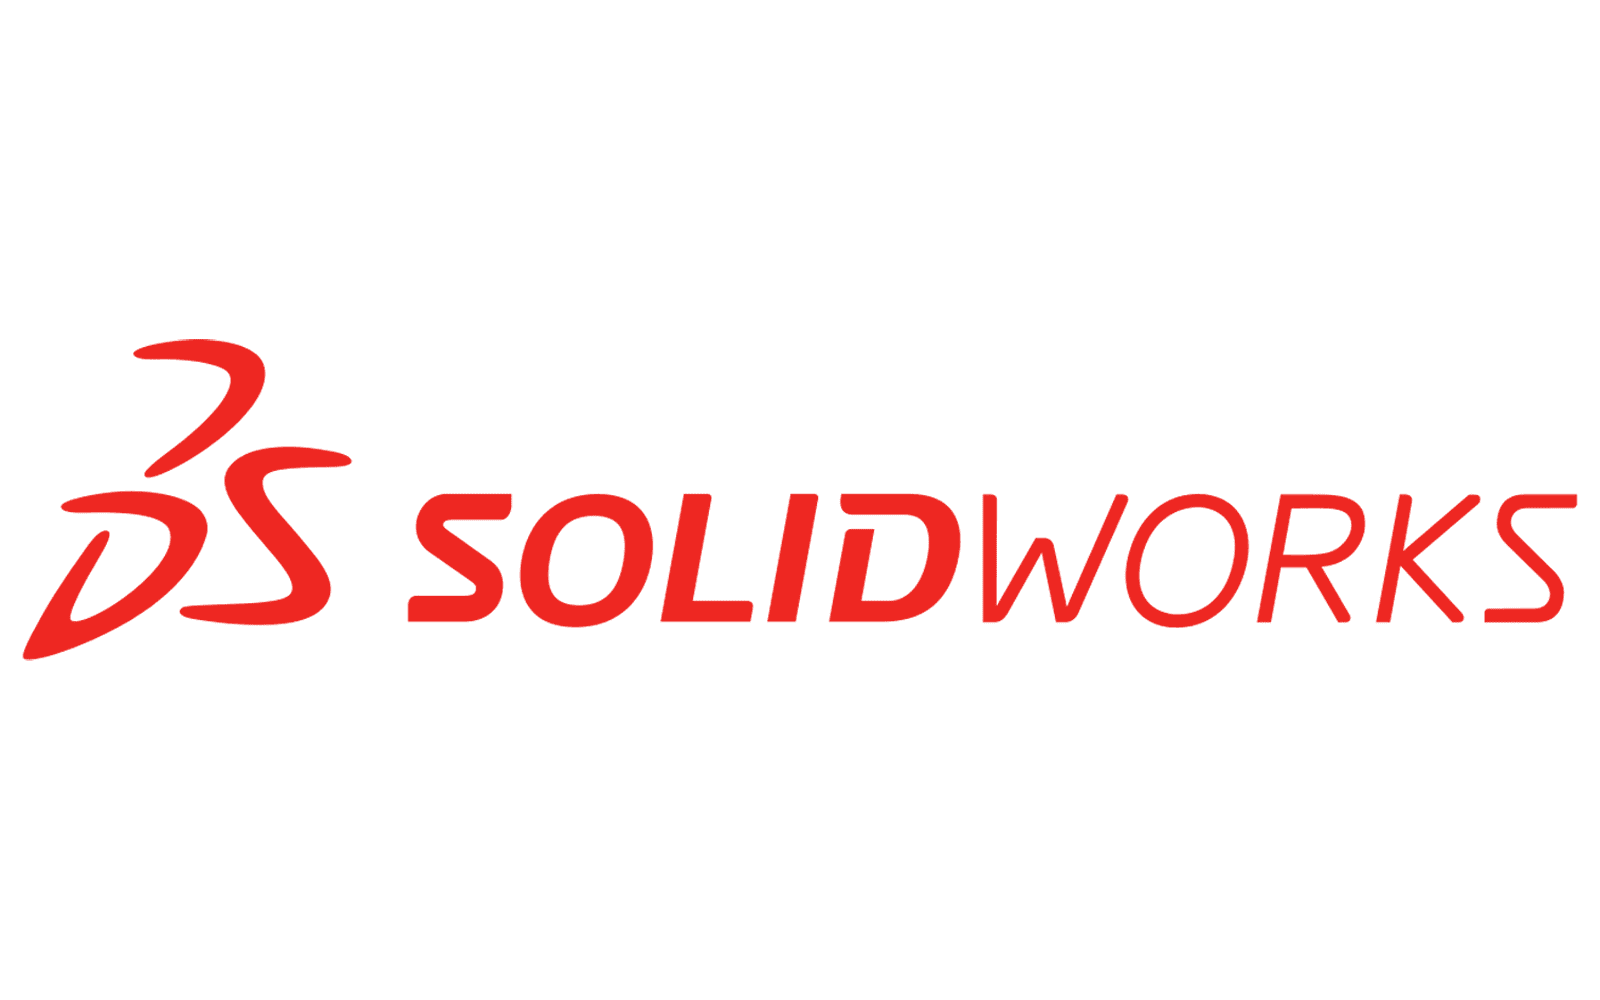 Solidworks logo